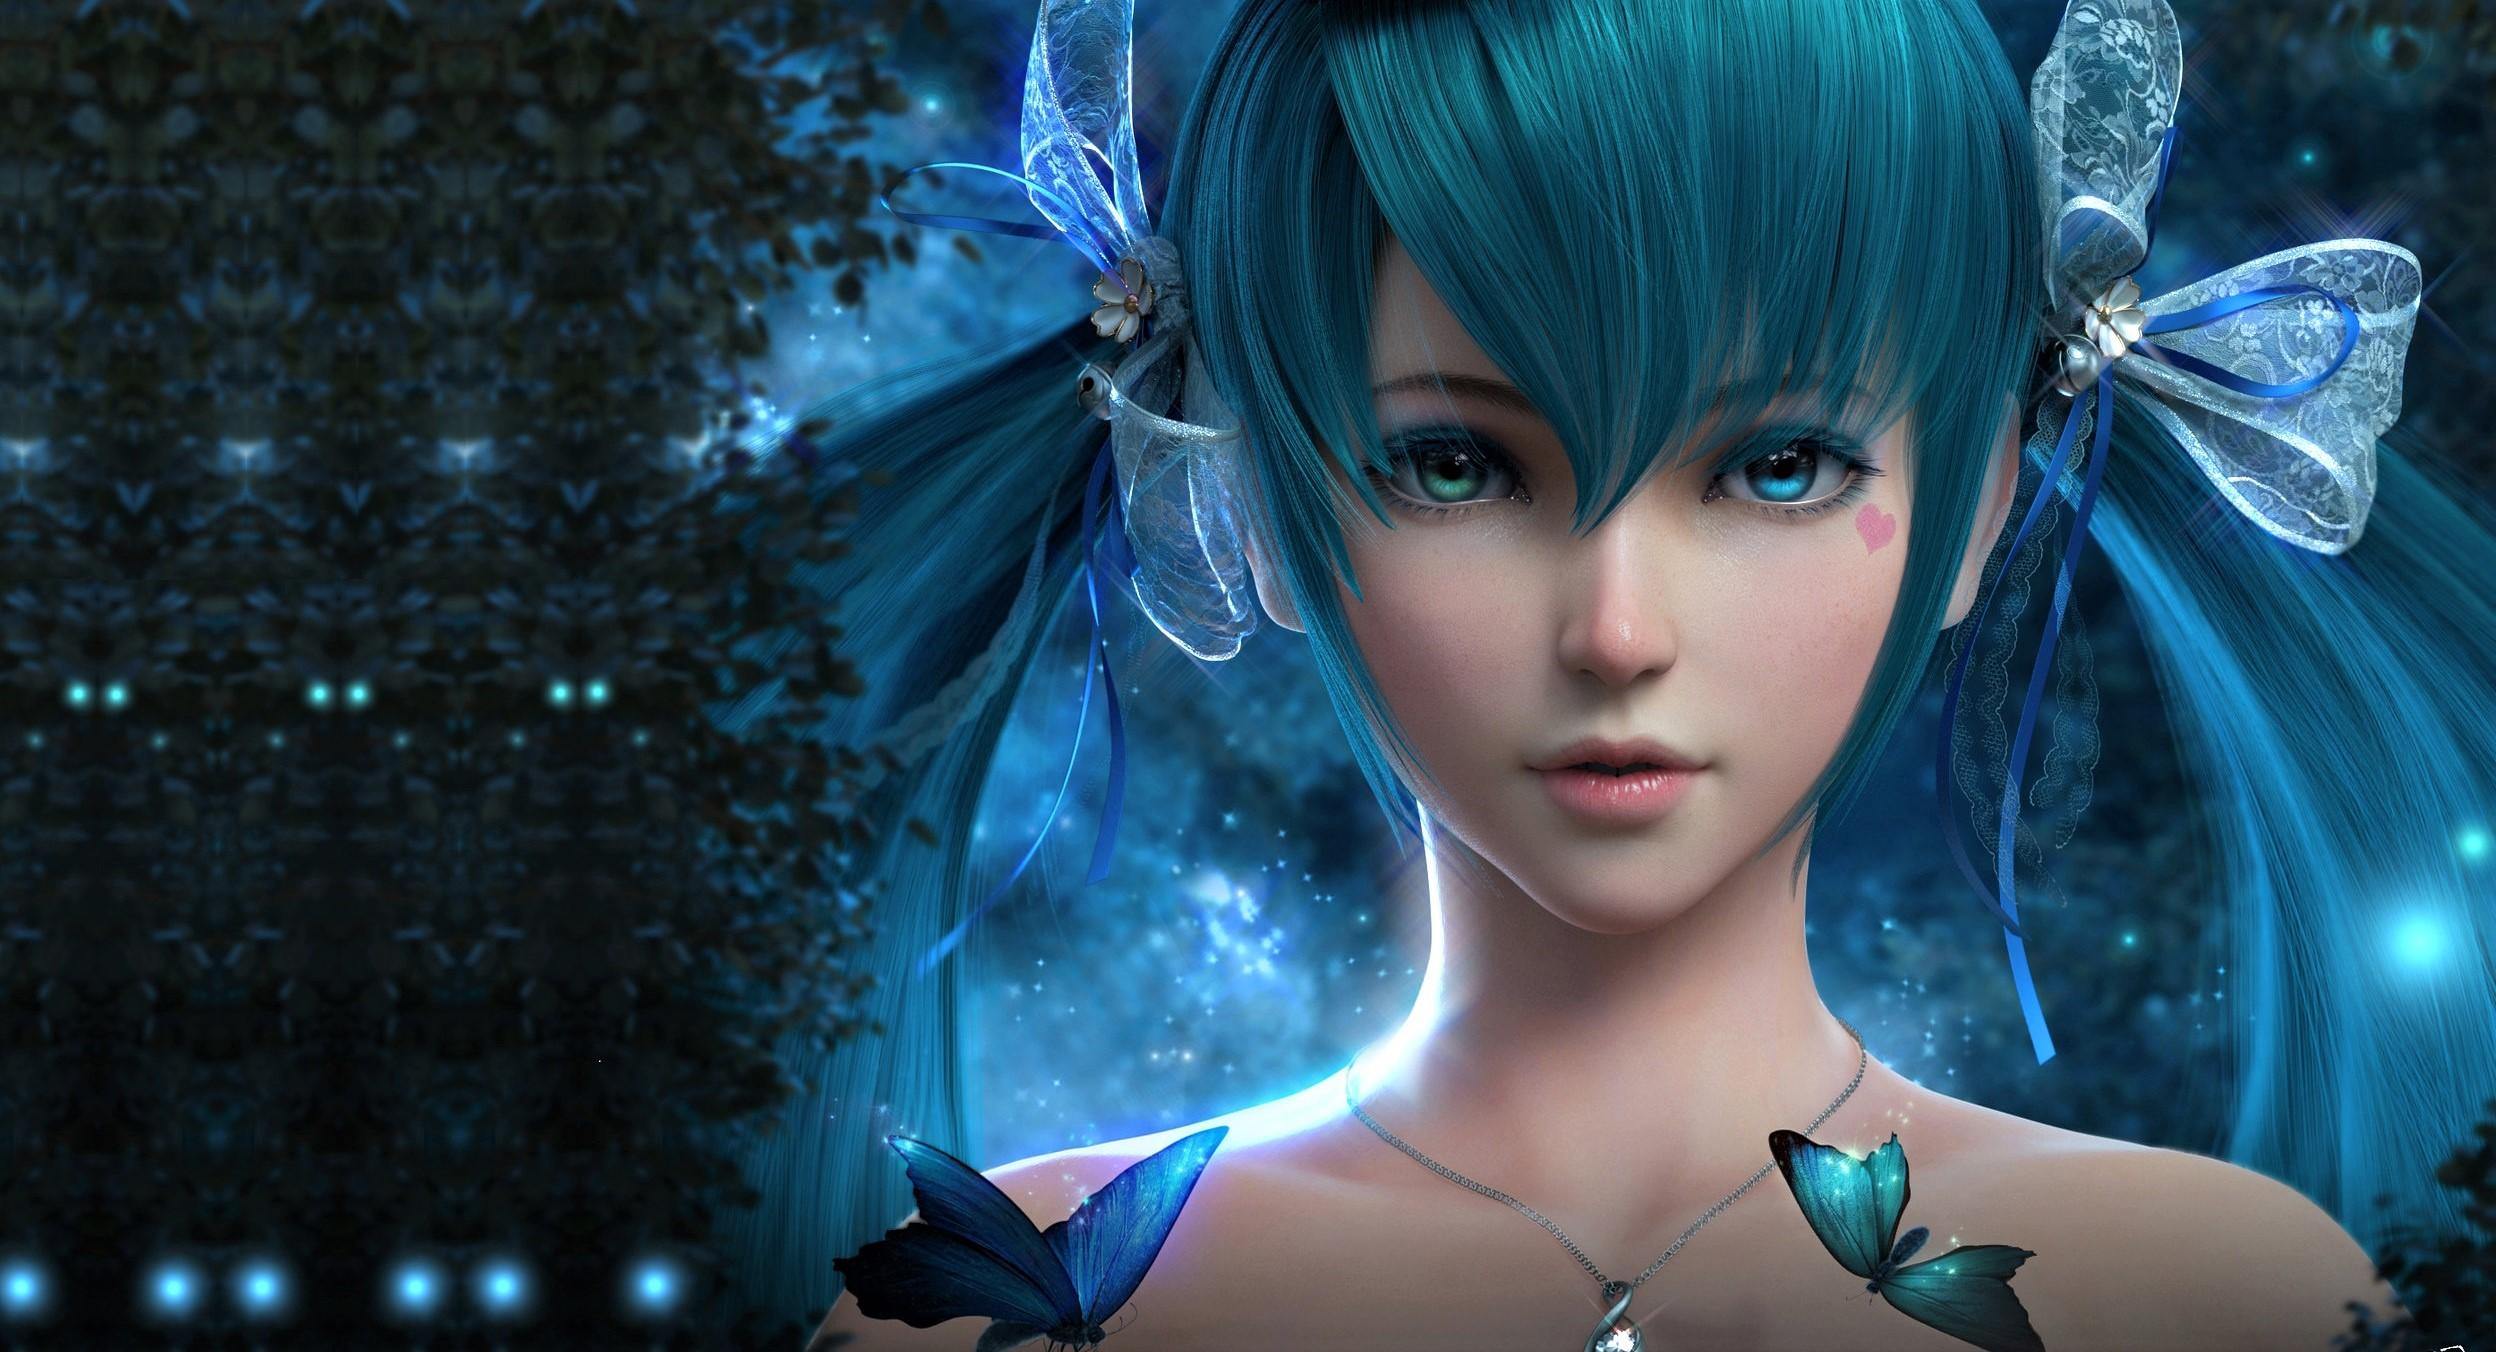 Blue Hair Anime Girl, HD Anime, 4k Wallpaper, Image